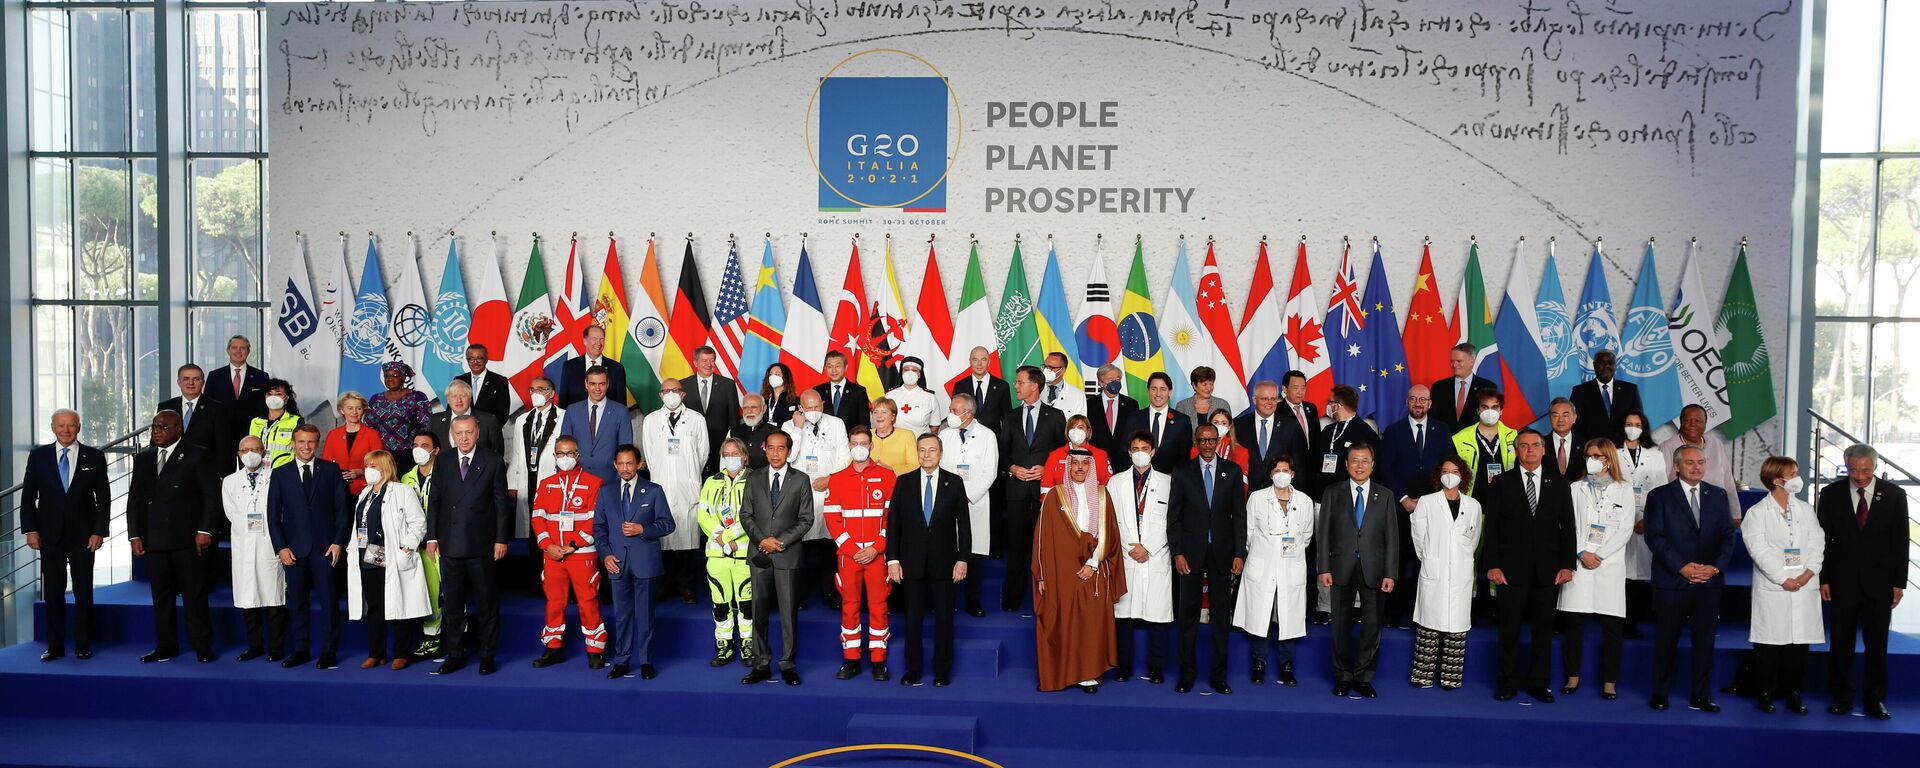 Los líderes estatales del G20 posan durante una sesión de fotos al inicio de la cumbre del G20 en Roma, Italia, el 30 de octubre de 2021 - Sputnik Mundo, 1920, 30.10.2021